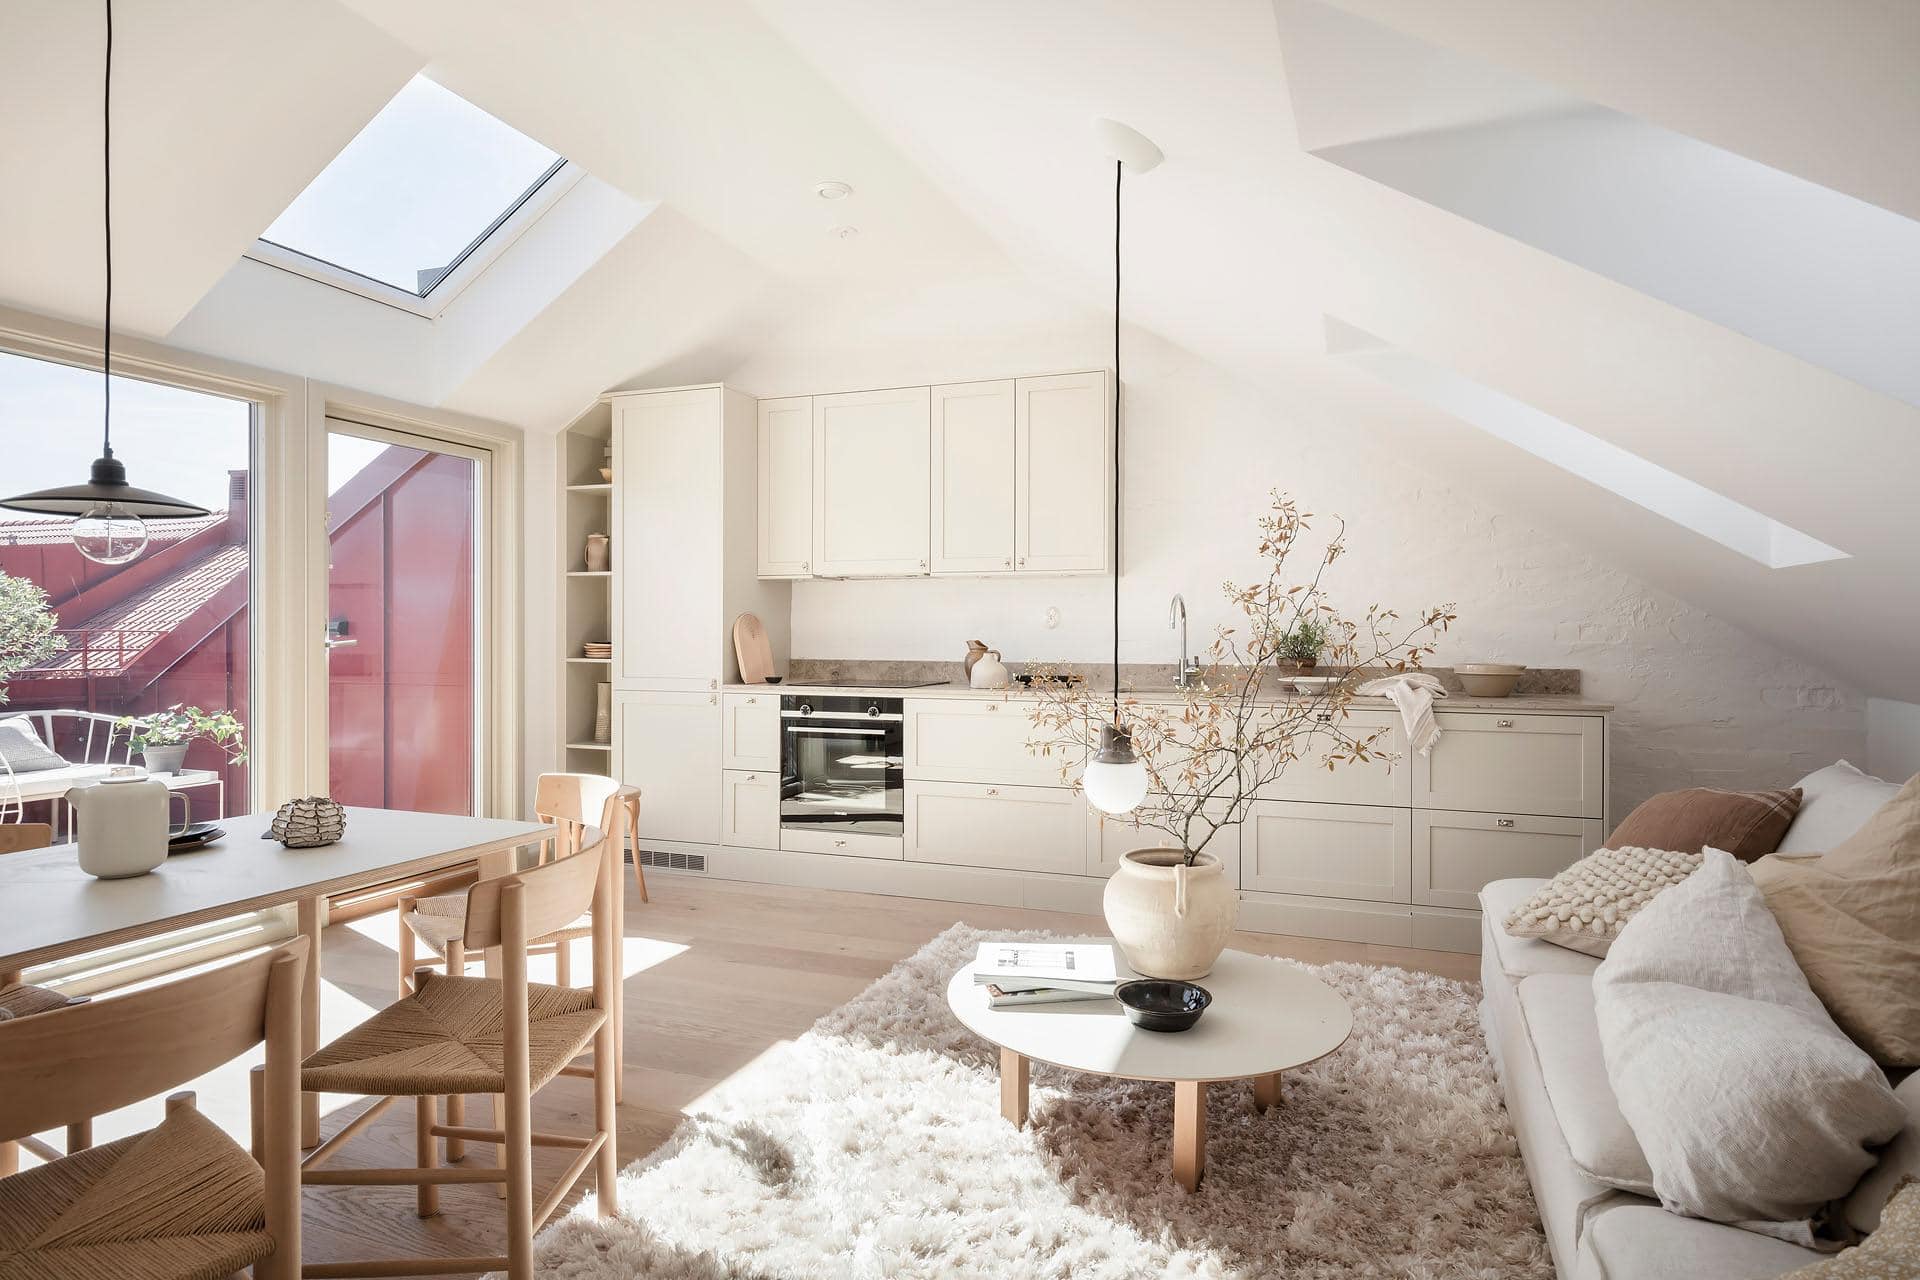 modern beige kitchen interior with kitchen accessories, loft style